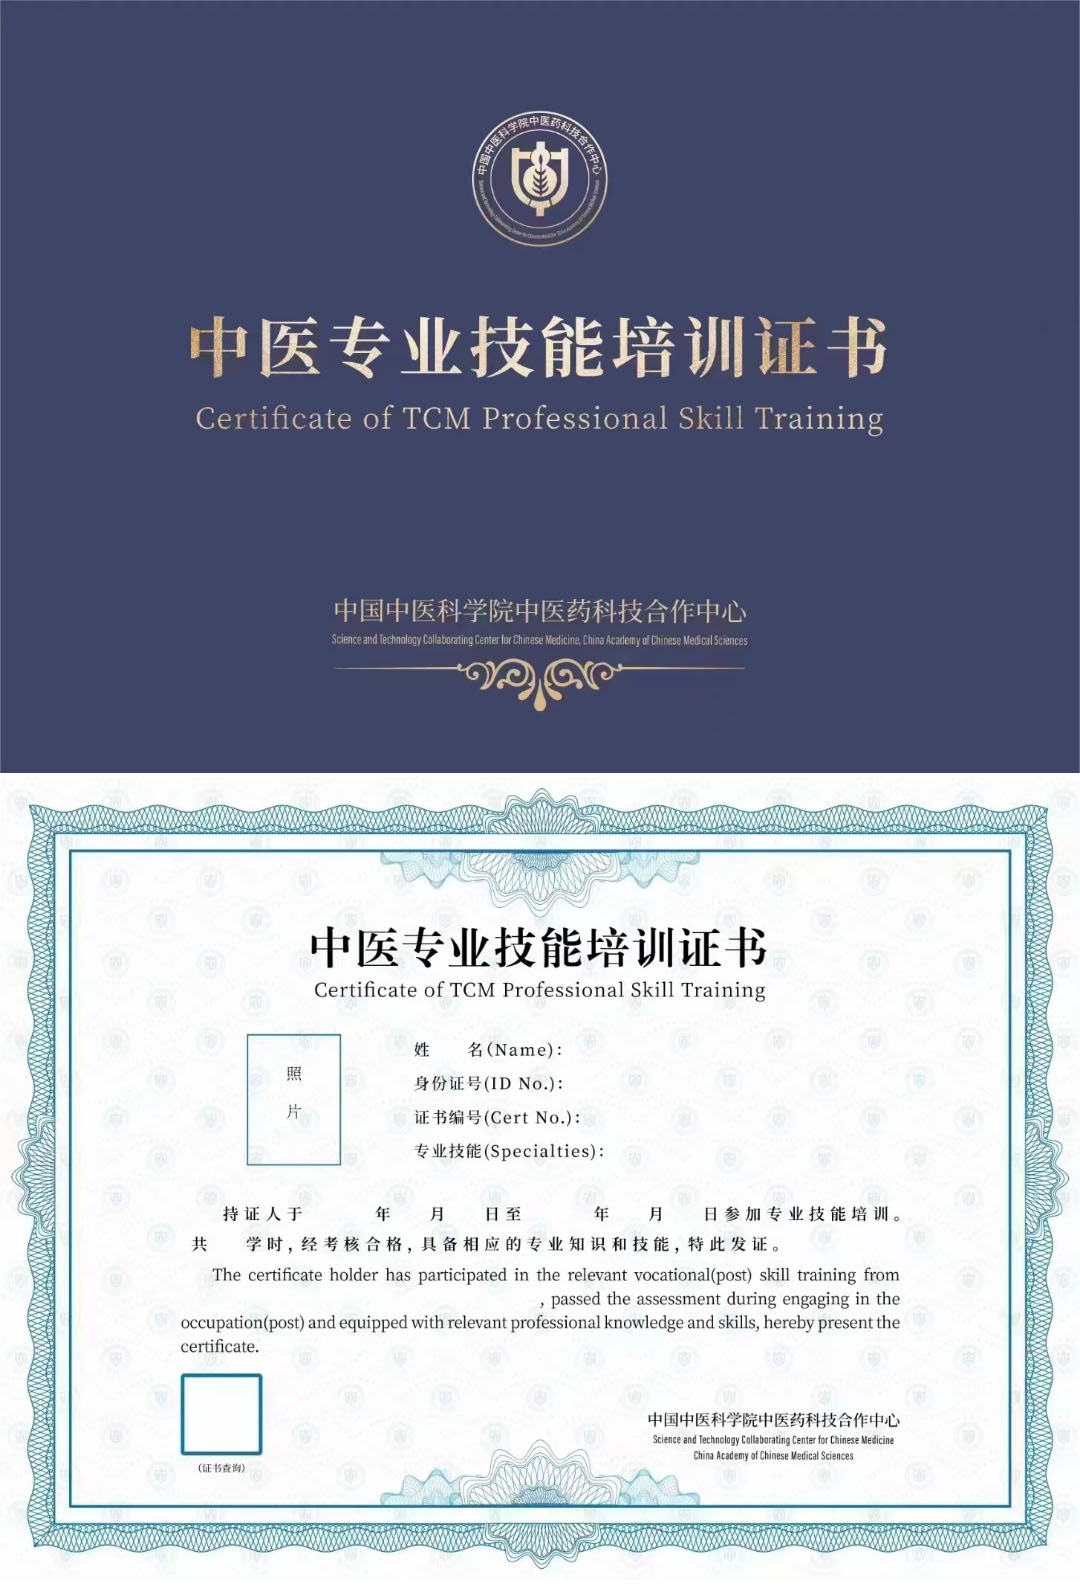 中国中医科学院中医药科技合作中心 中医专业技能培训证书 中医健康管理技术证书样本